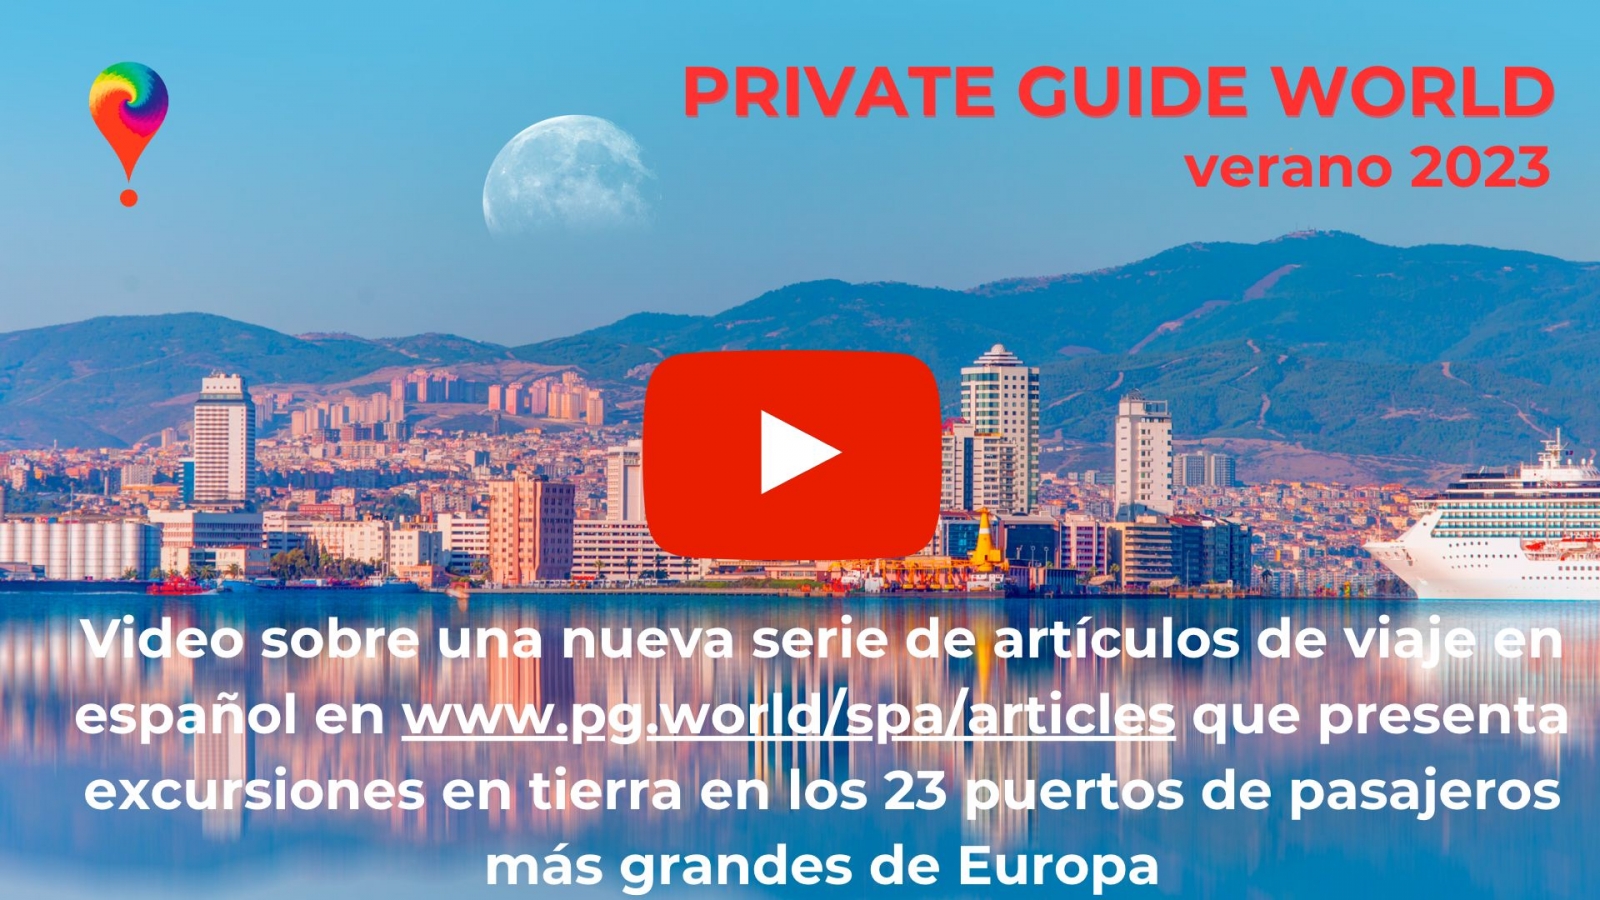 Vídeo en nuestro canal de YouTube @PrivateGuideWorld :: Excursiones en tierra en 23 puertos de pasajeros de Europa en www.pg.world